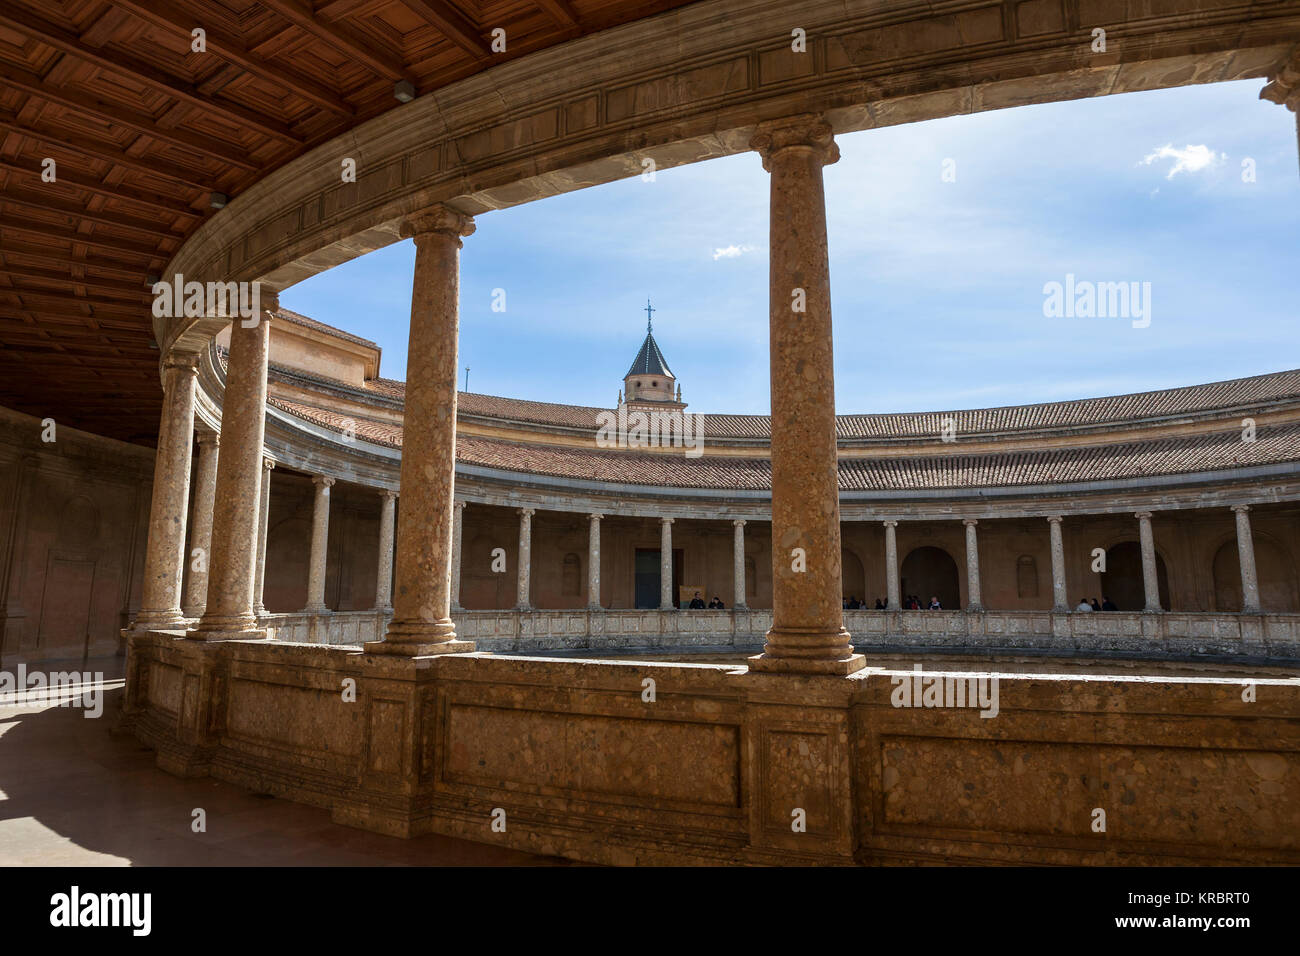 La circulaire intérieur du Palacio de Carlos V (Palais de Charles Quint) dans le complexe de l'Alhambra, Grenade Banque D'Images